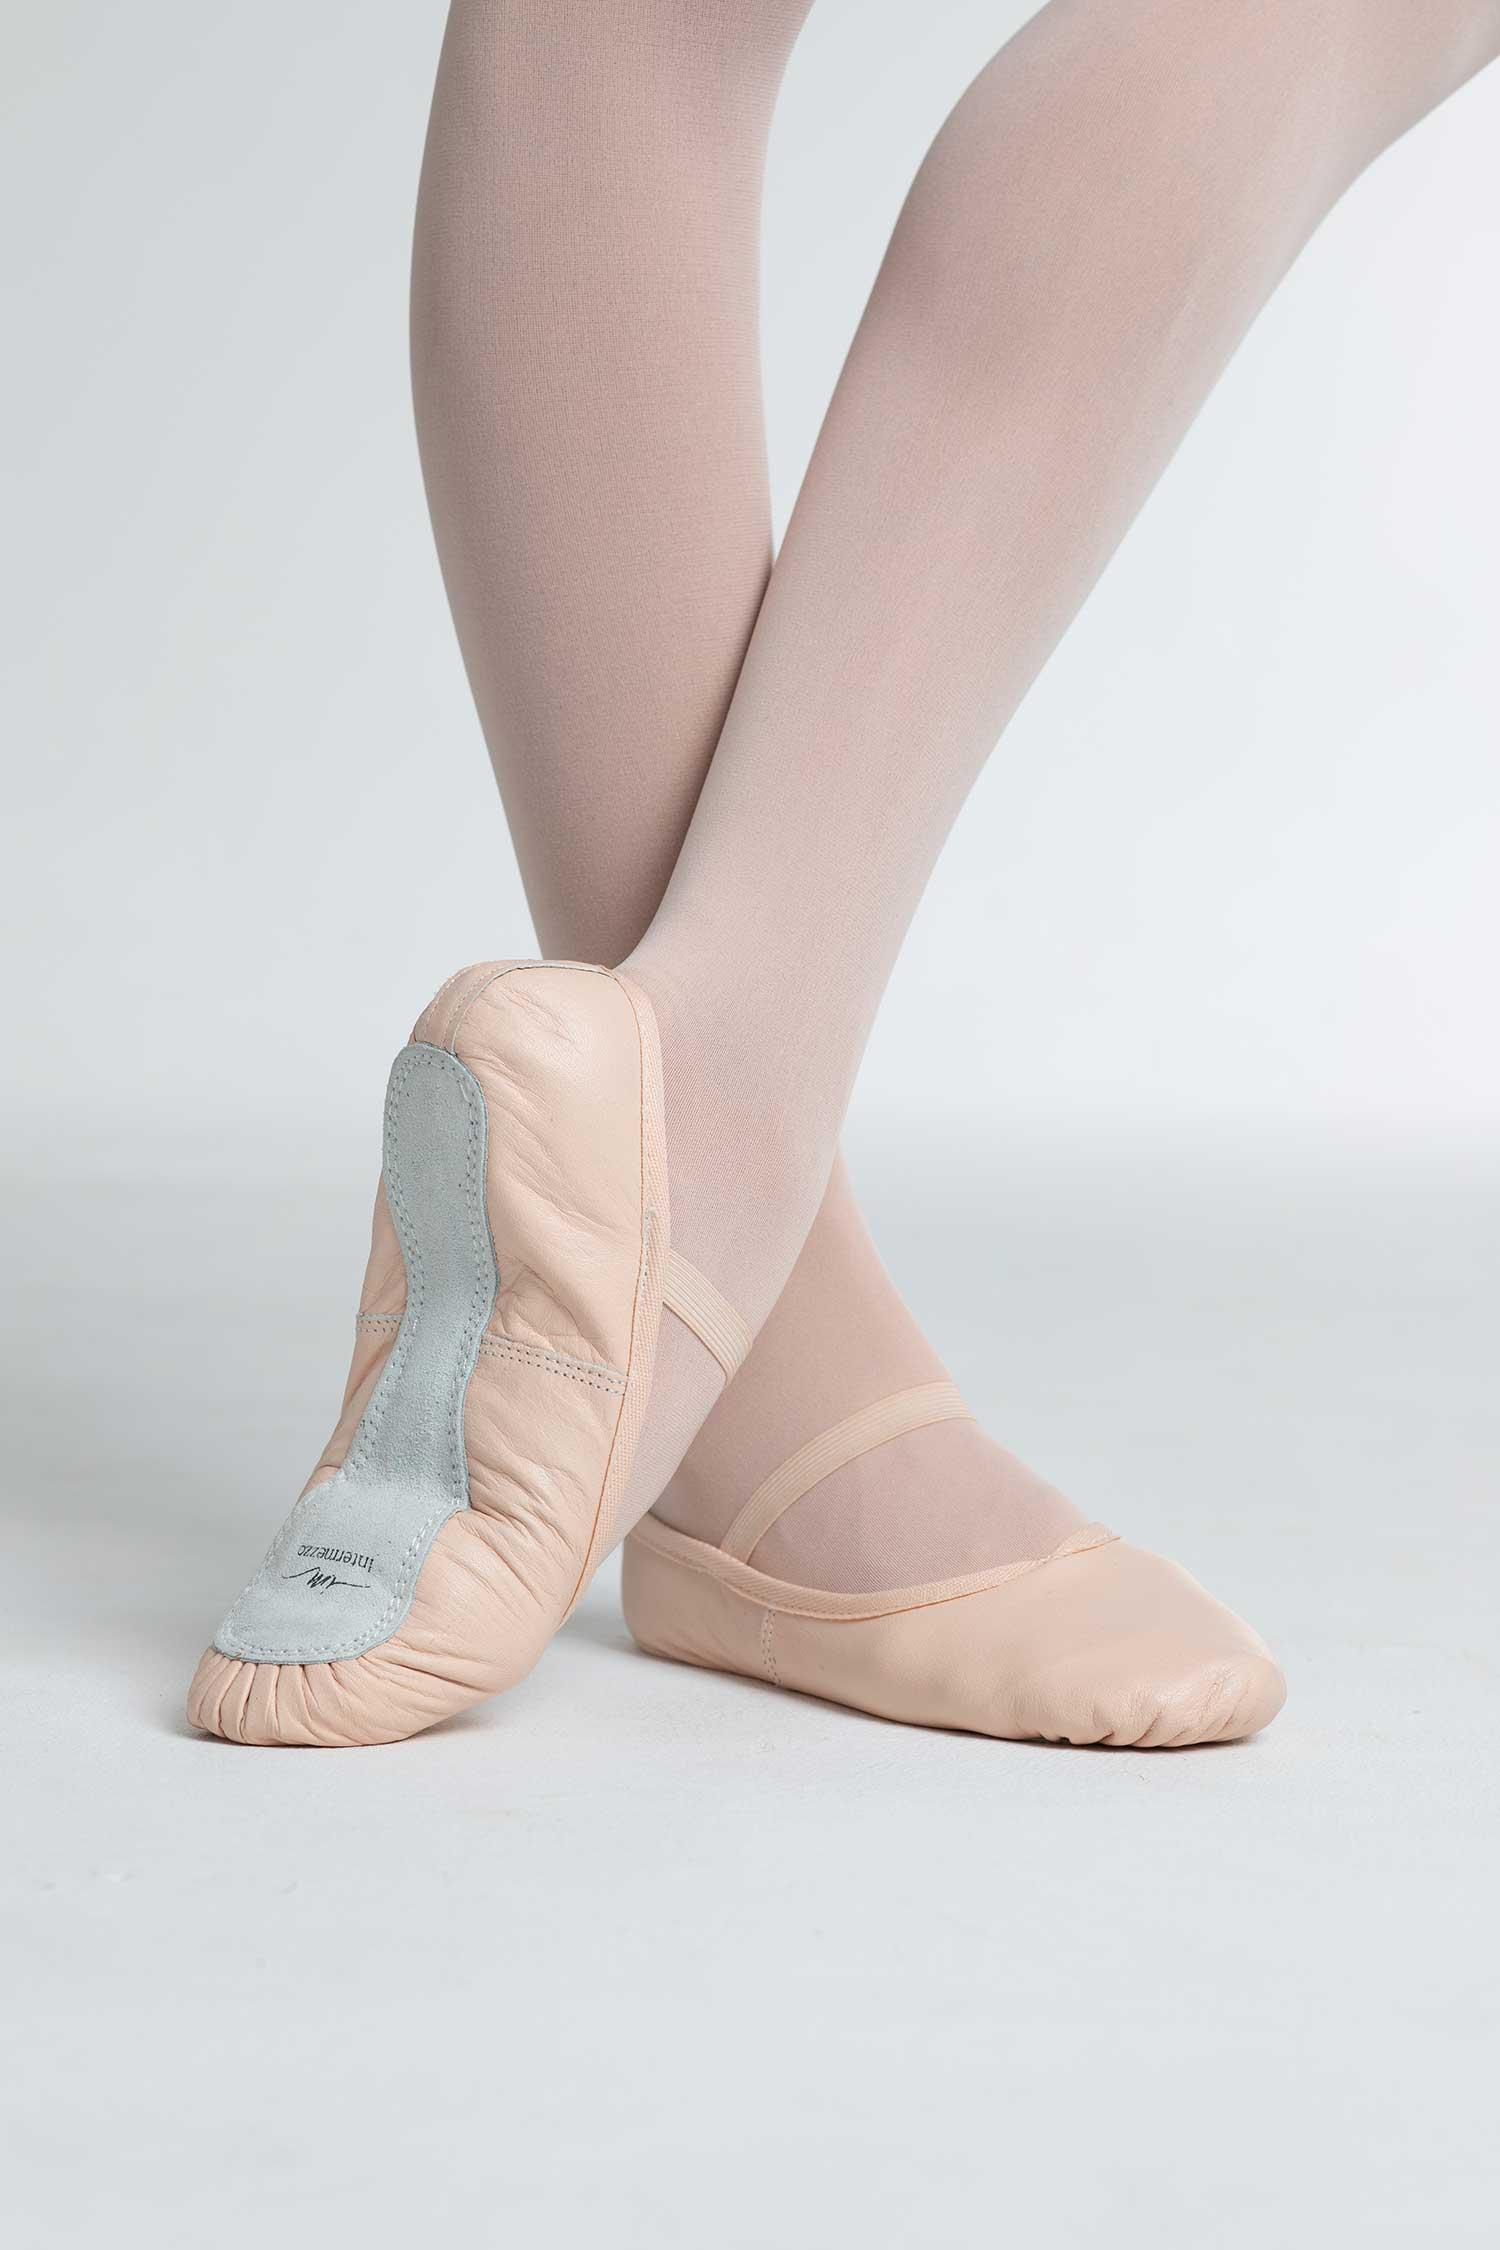 Zapatillas de Ballet de media punta en piel rosa y suela entera. Intermezzo